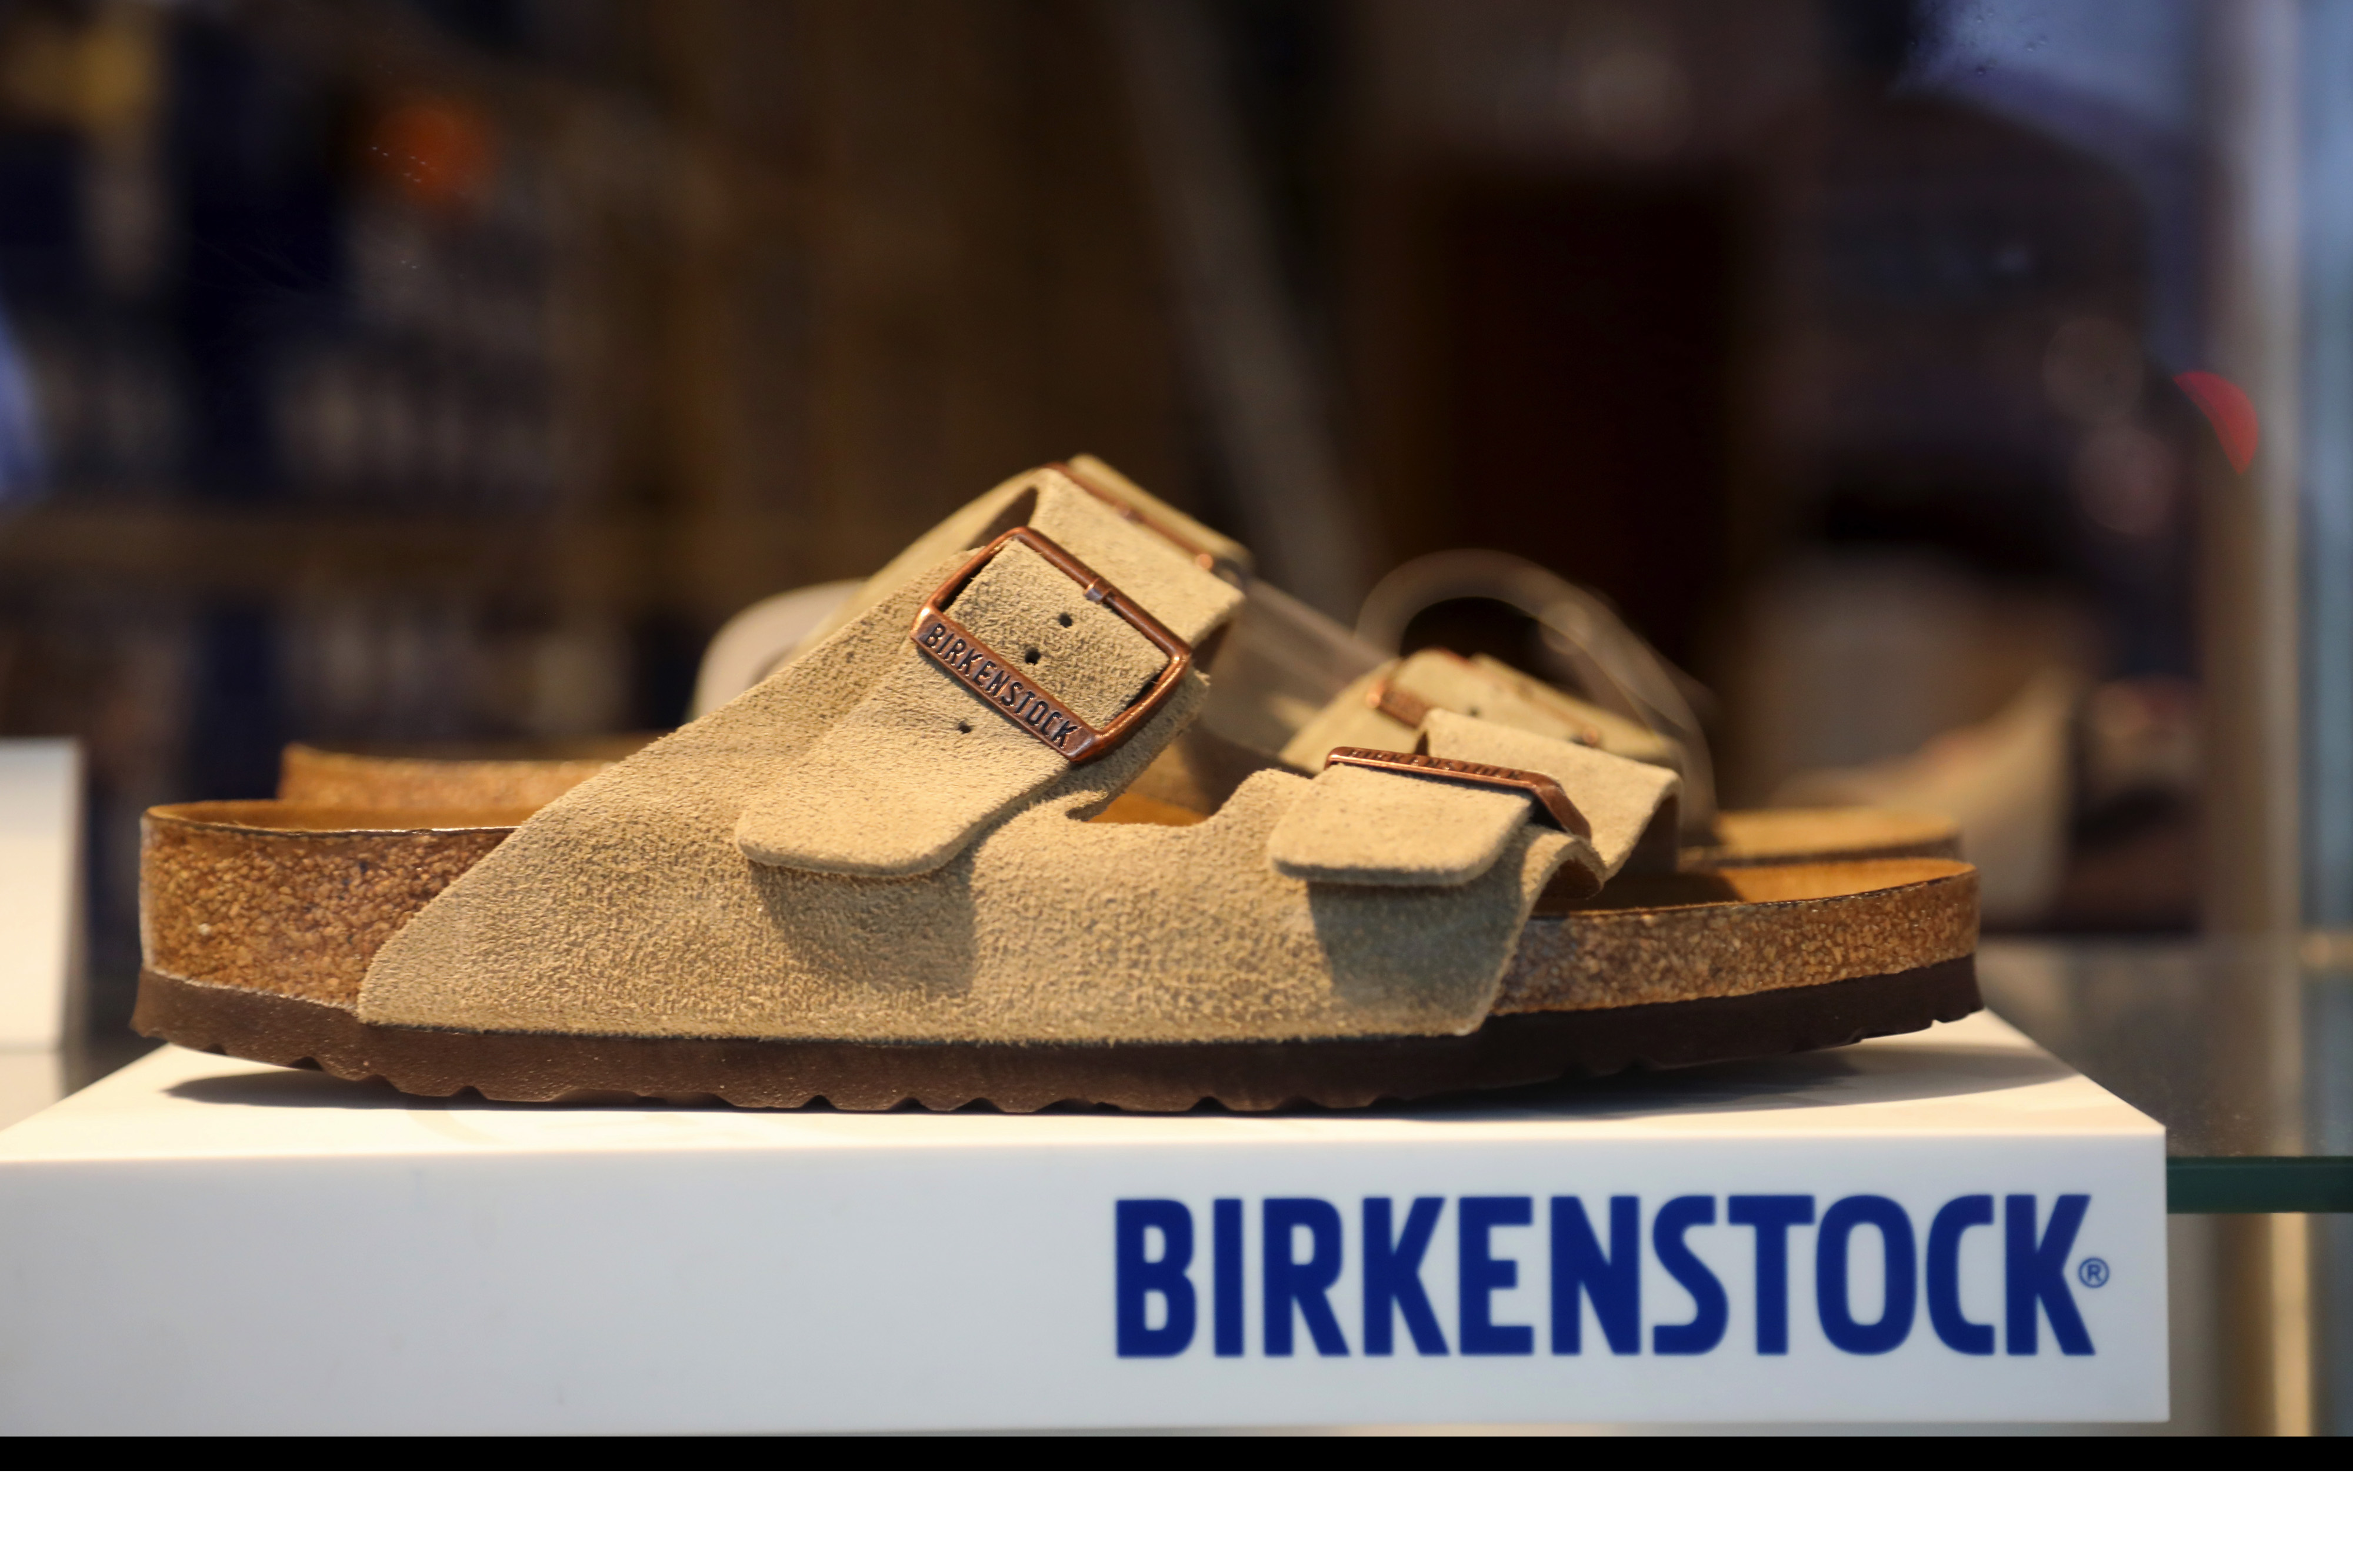 birkenstock official website